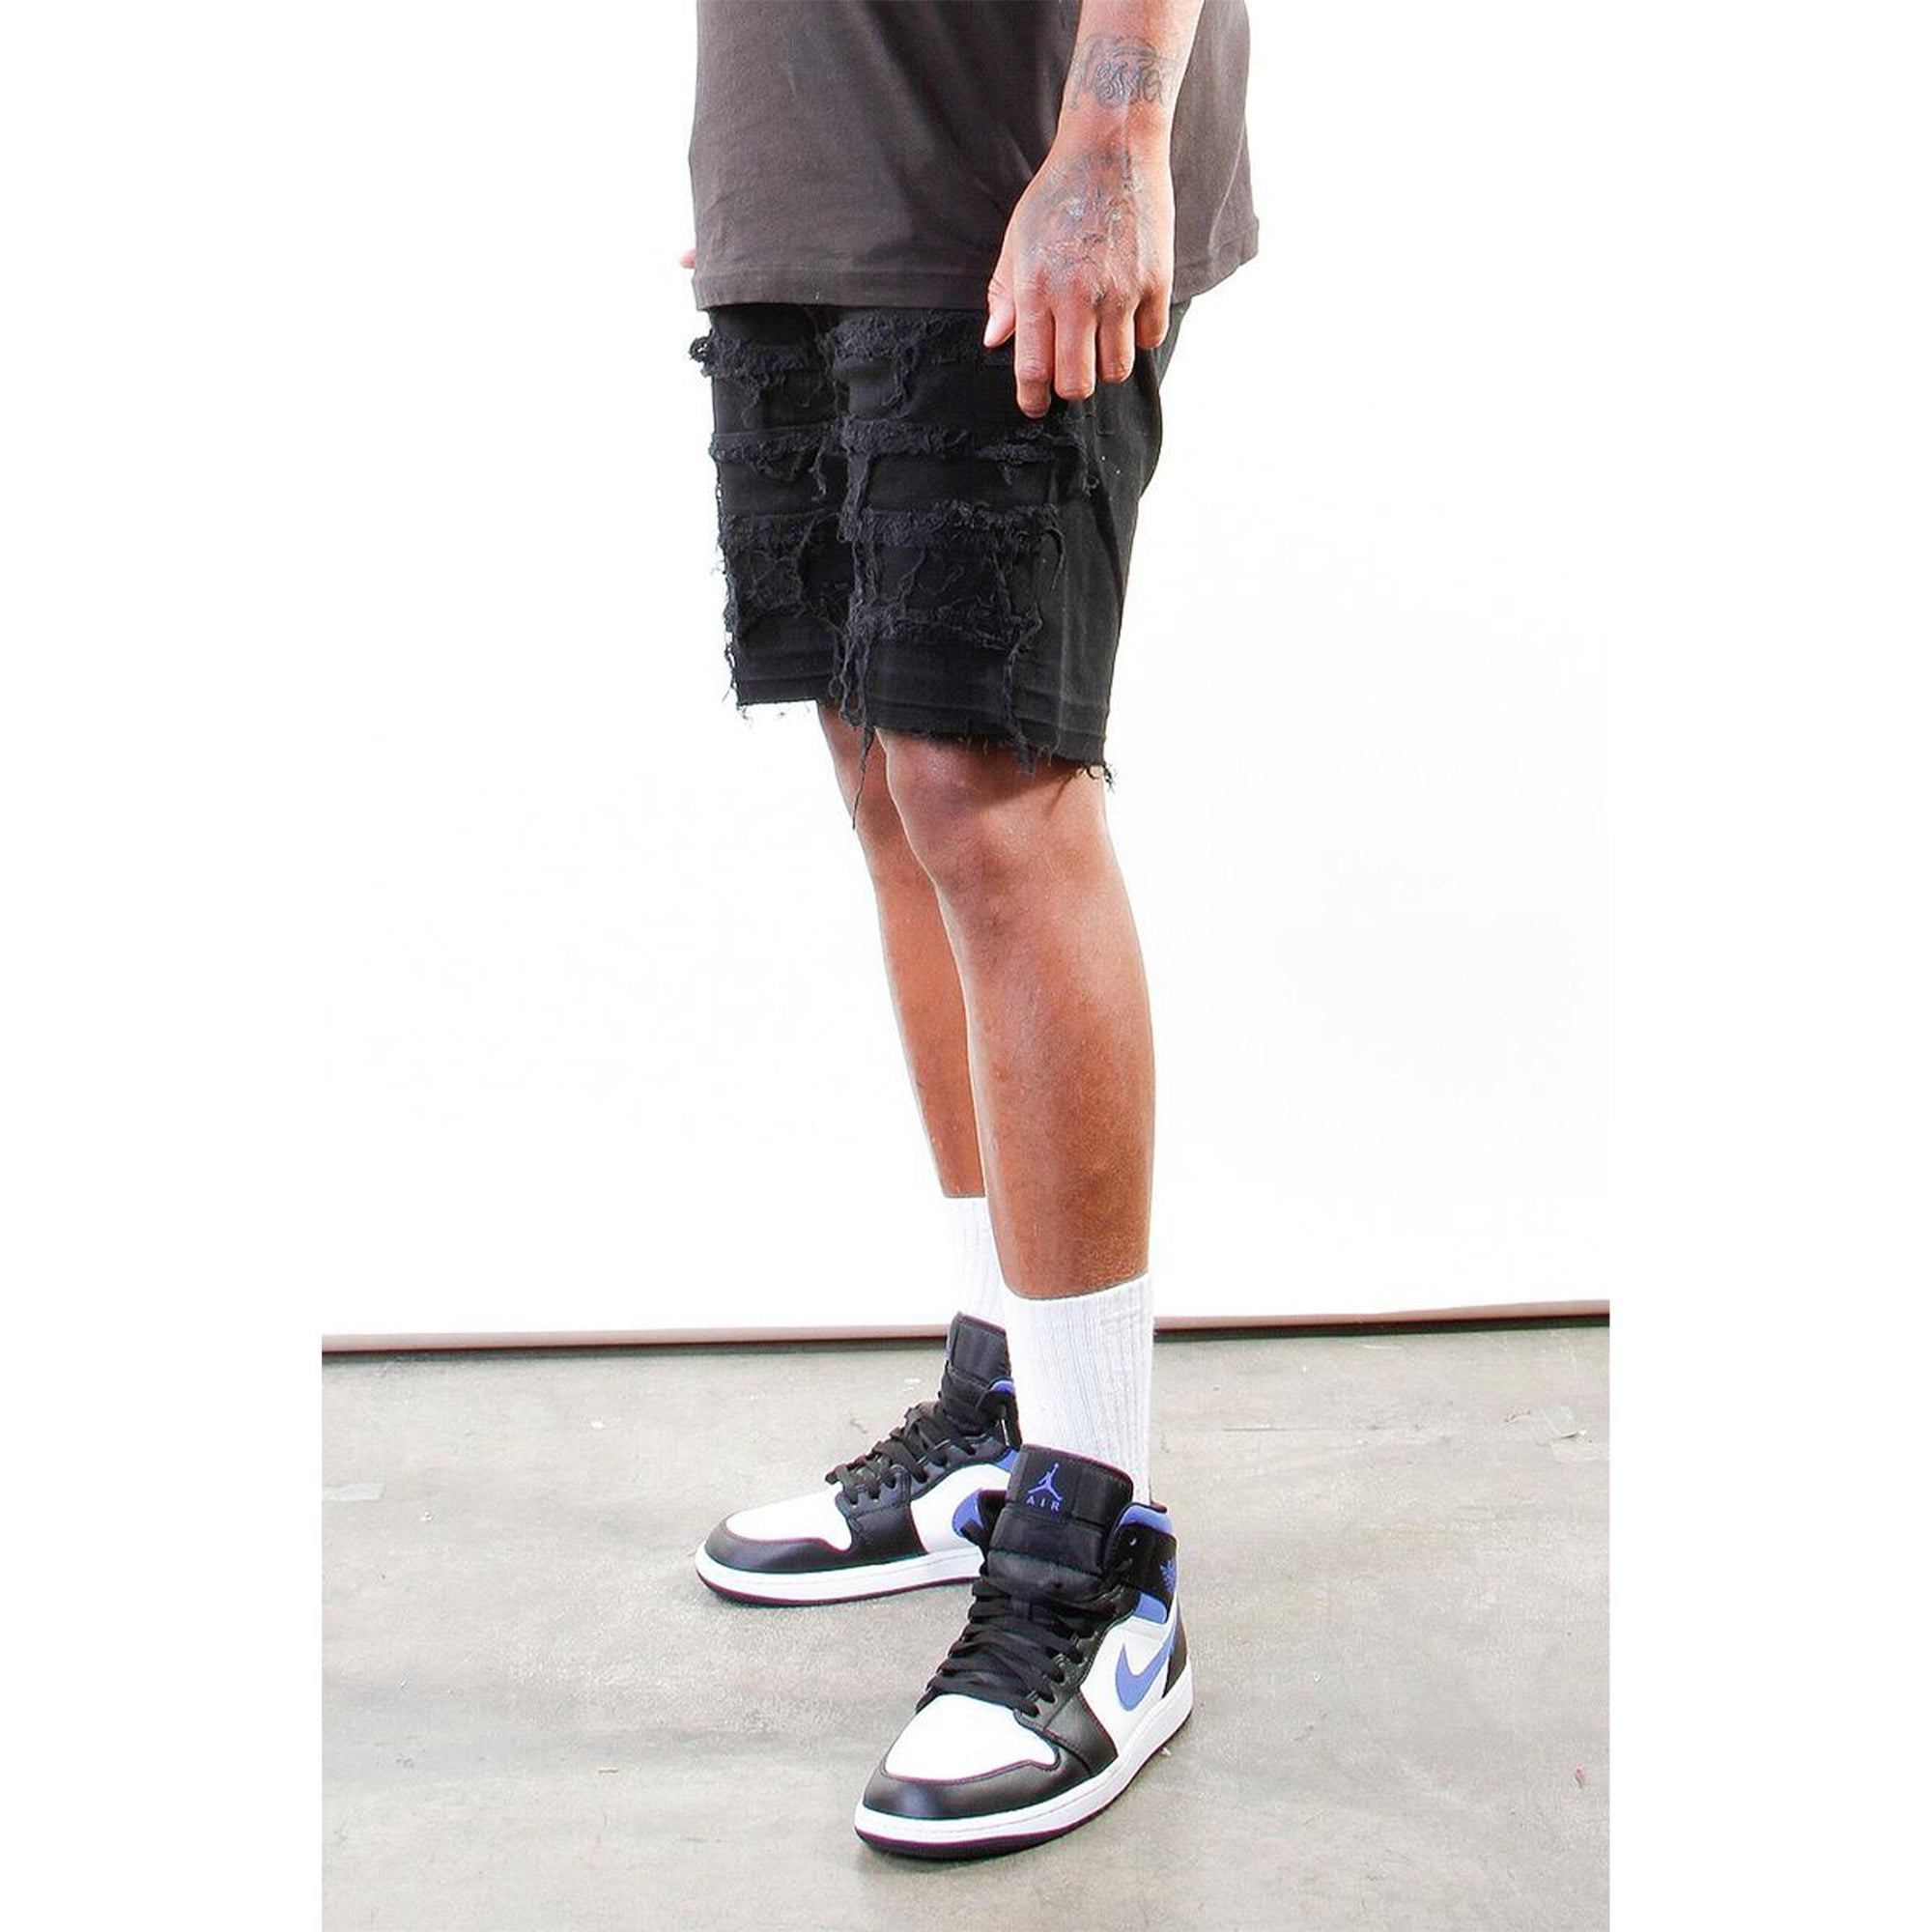 Cooper 9 LA Men Union Stack Jeans Shorts (Black)-Nexus Clothing